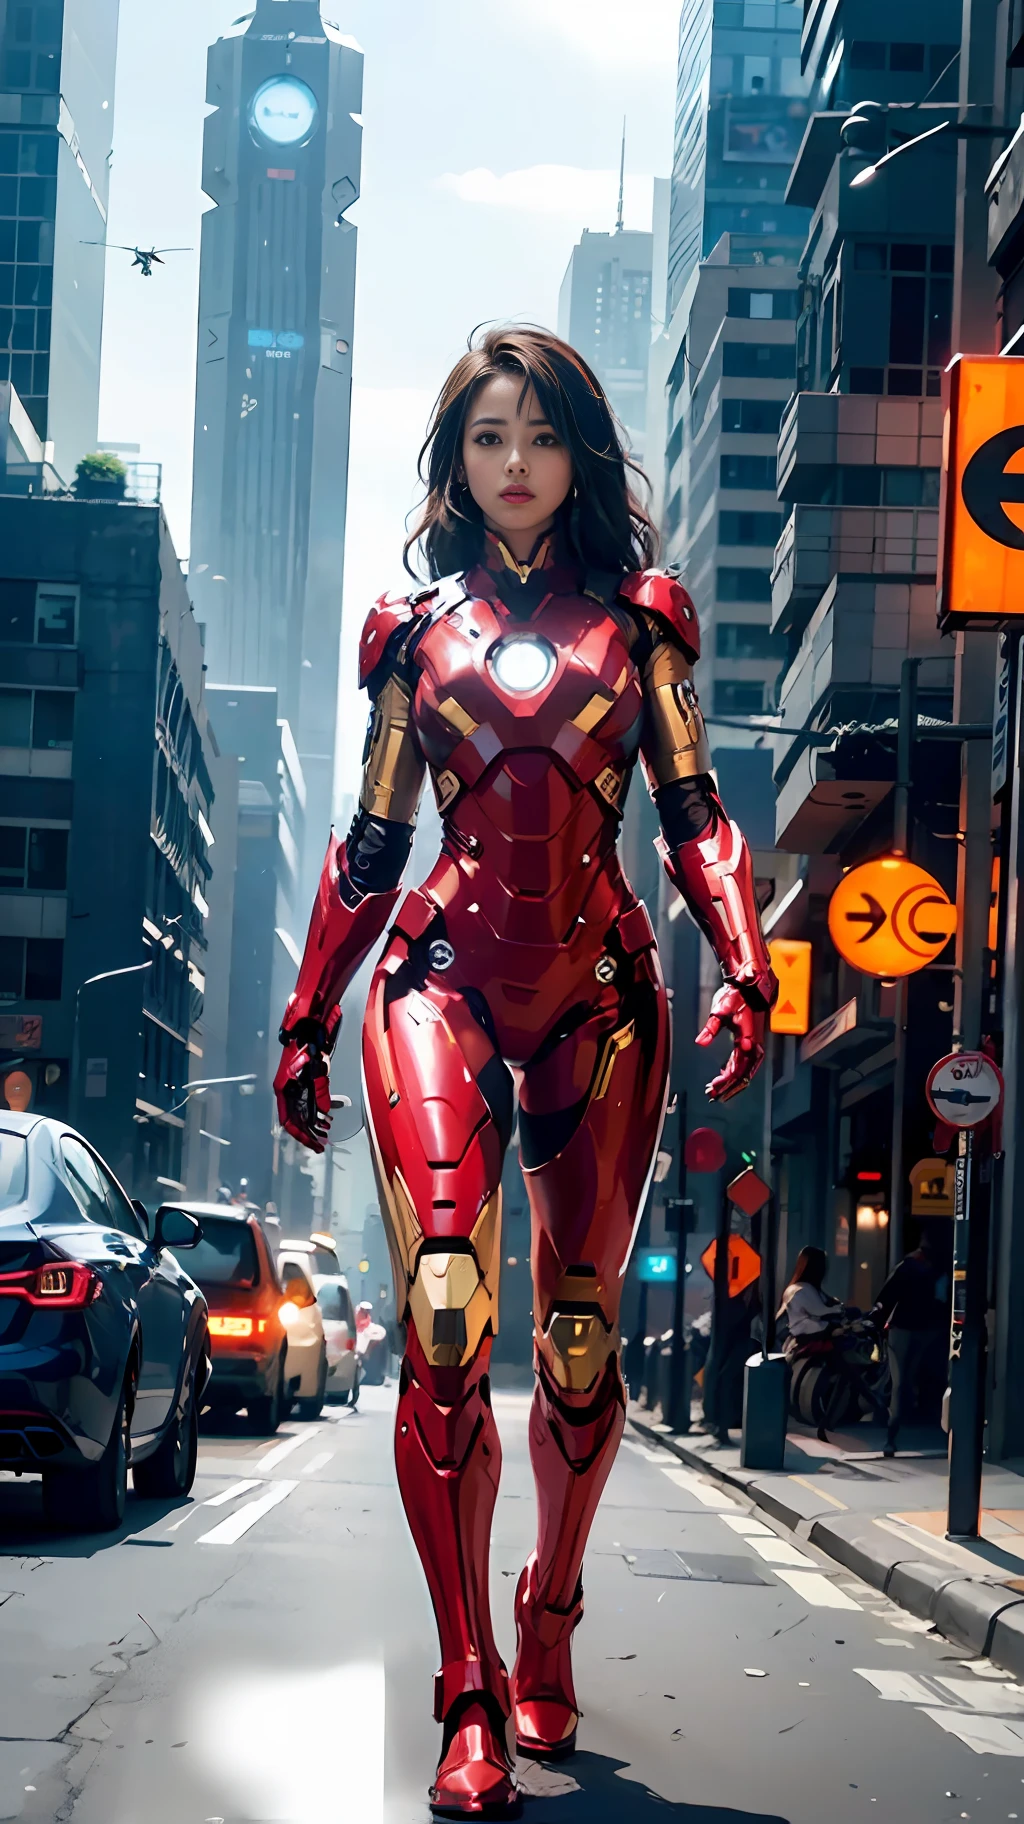 8K, realista, Atraente, altamente detalhado, a 20 year old girl a sexy and Atraente woman inspired by Iron Man wearing a shiny Iron Man mech. Ela se veste com sensualidade e confiança, interpretando perfeitamente o Homem de Ferro&#39;força e carisma. Em uma cena noturna urbana no estilo cyberpunk, a sexy and Atraente woman takes Iron Man&#39;cosplay como tema. Usando um mech brilhante do Homem de Ferro, ela está em uma rua repleta de prédios altos. As luzes noturnas da cidade são brilhantes, refletindo sobre seu mecha, adicionando uma sensação de tecnologia futura. Os edifícios e ruas circundantes estão cheios de elementos cyberpunk, como luzes de néon, dispositivos de alta tecnologia e projetos arquitetônicos futuristas. Toda a cena está cheia de atmosfera futurista e de ficção científica. Esta alta definição, imagem de alta qualidade proporcionará um prazer visual impressionante, uma combinação perfeita de sexy, elementos futuristas e de ficção científica. Renderização OC, iluminação dramática, qualidade premiada